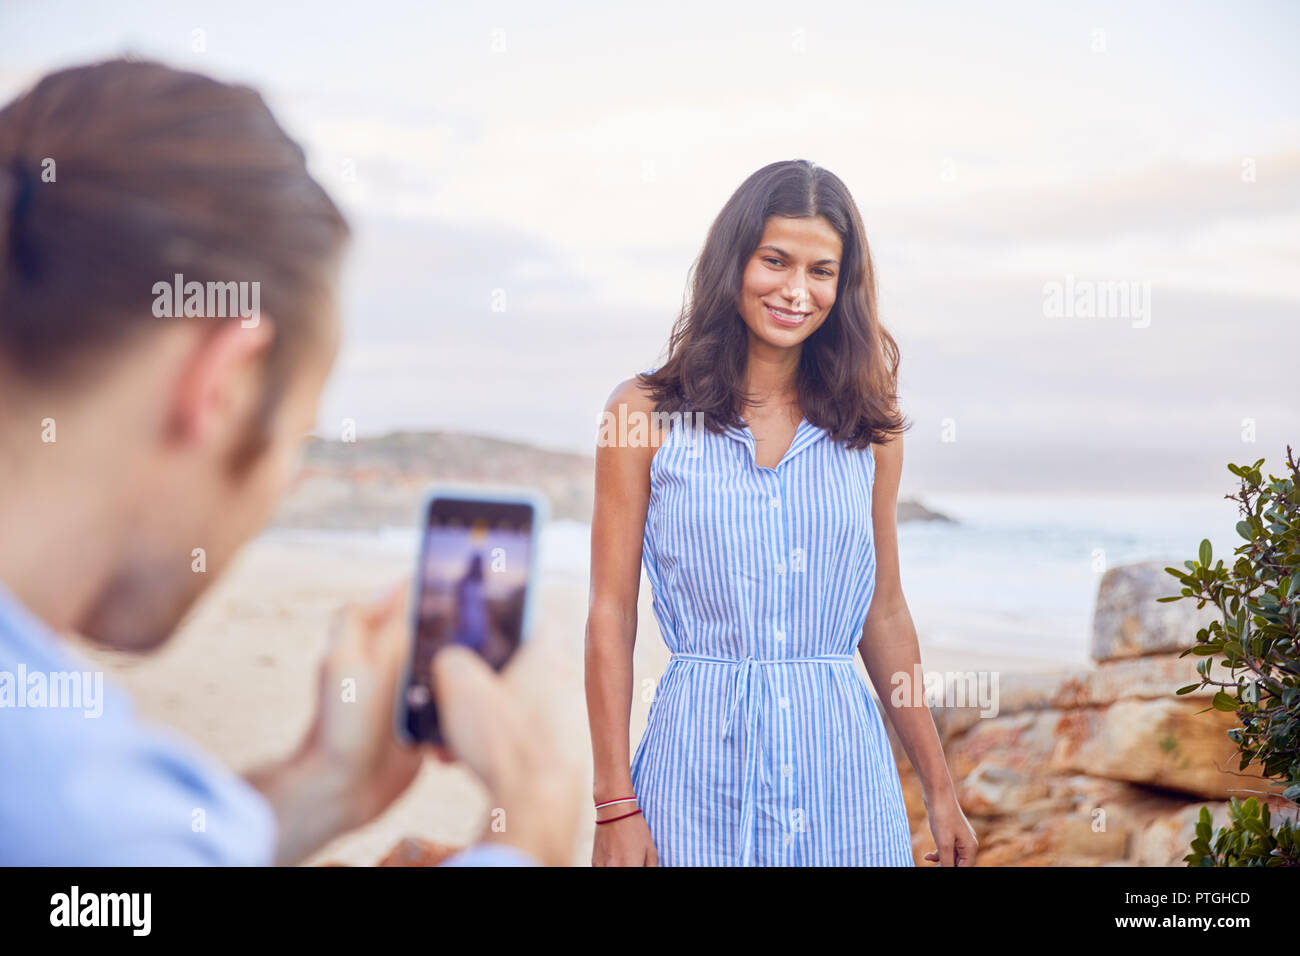 Jeune homme avec smart phone photographier amie at beach Banque D'Images